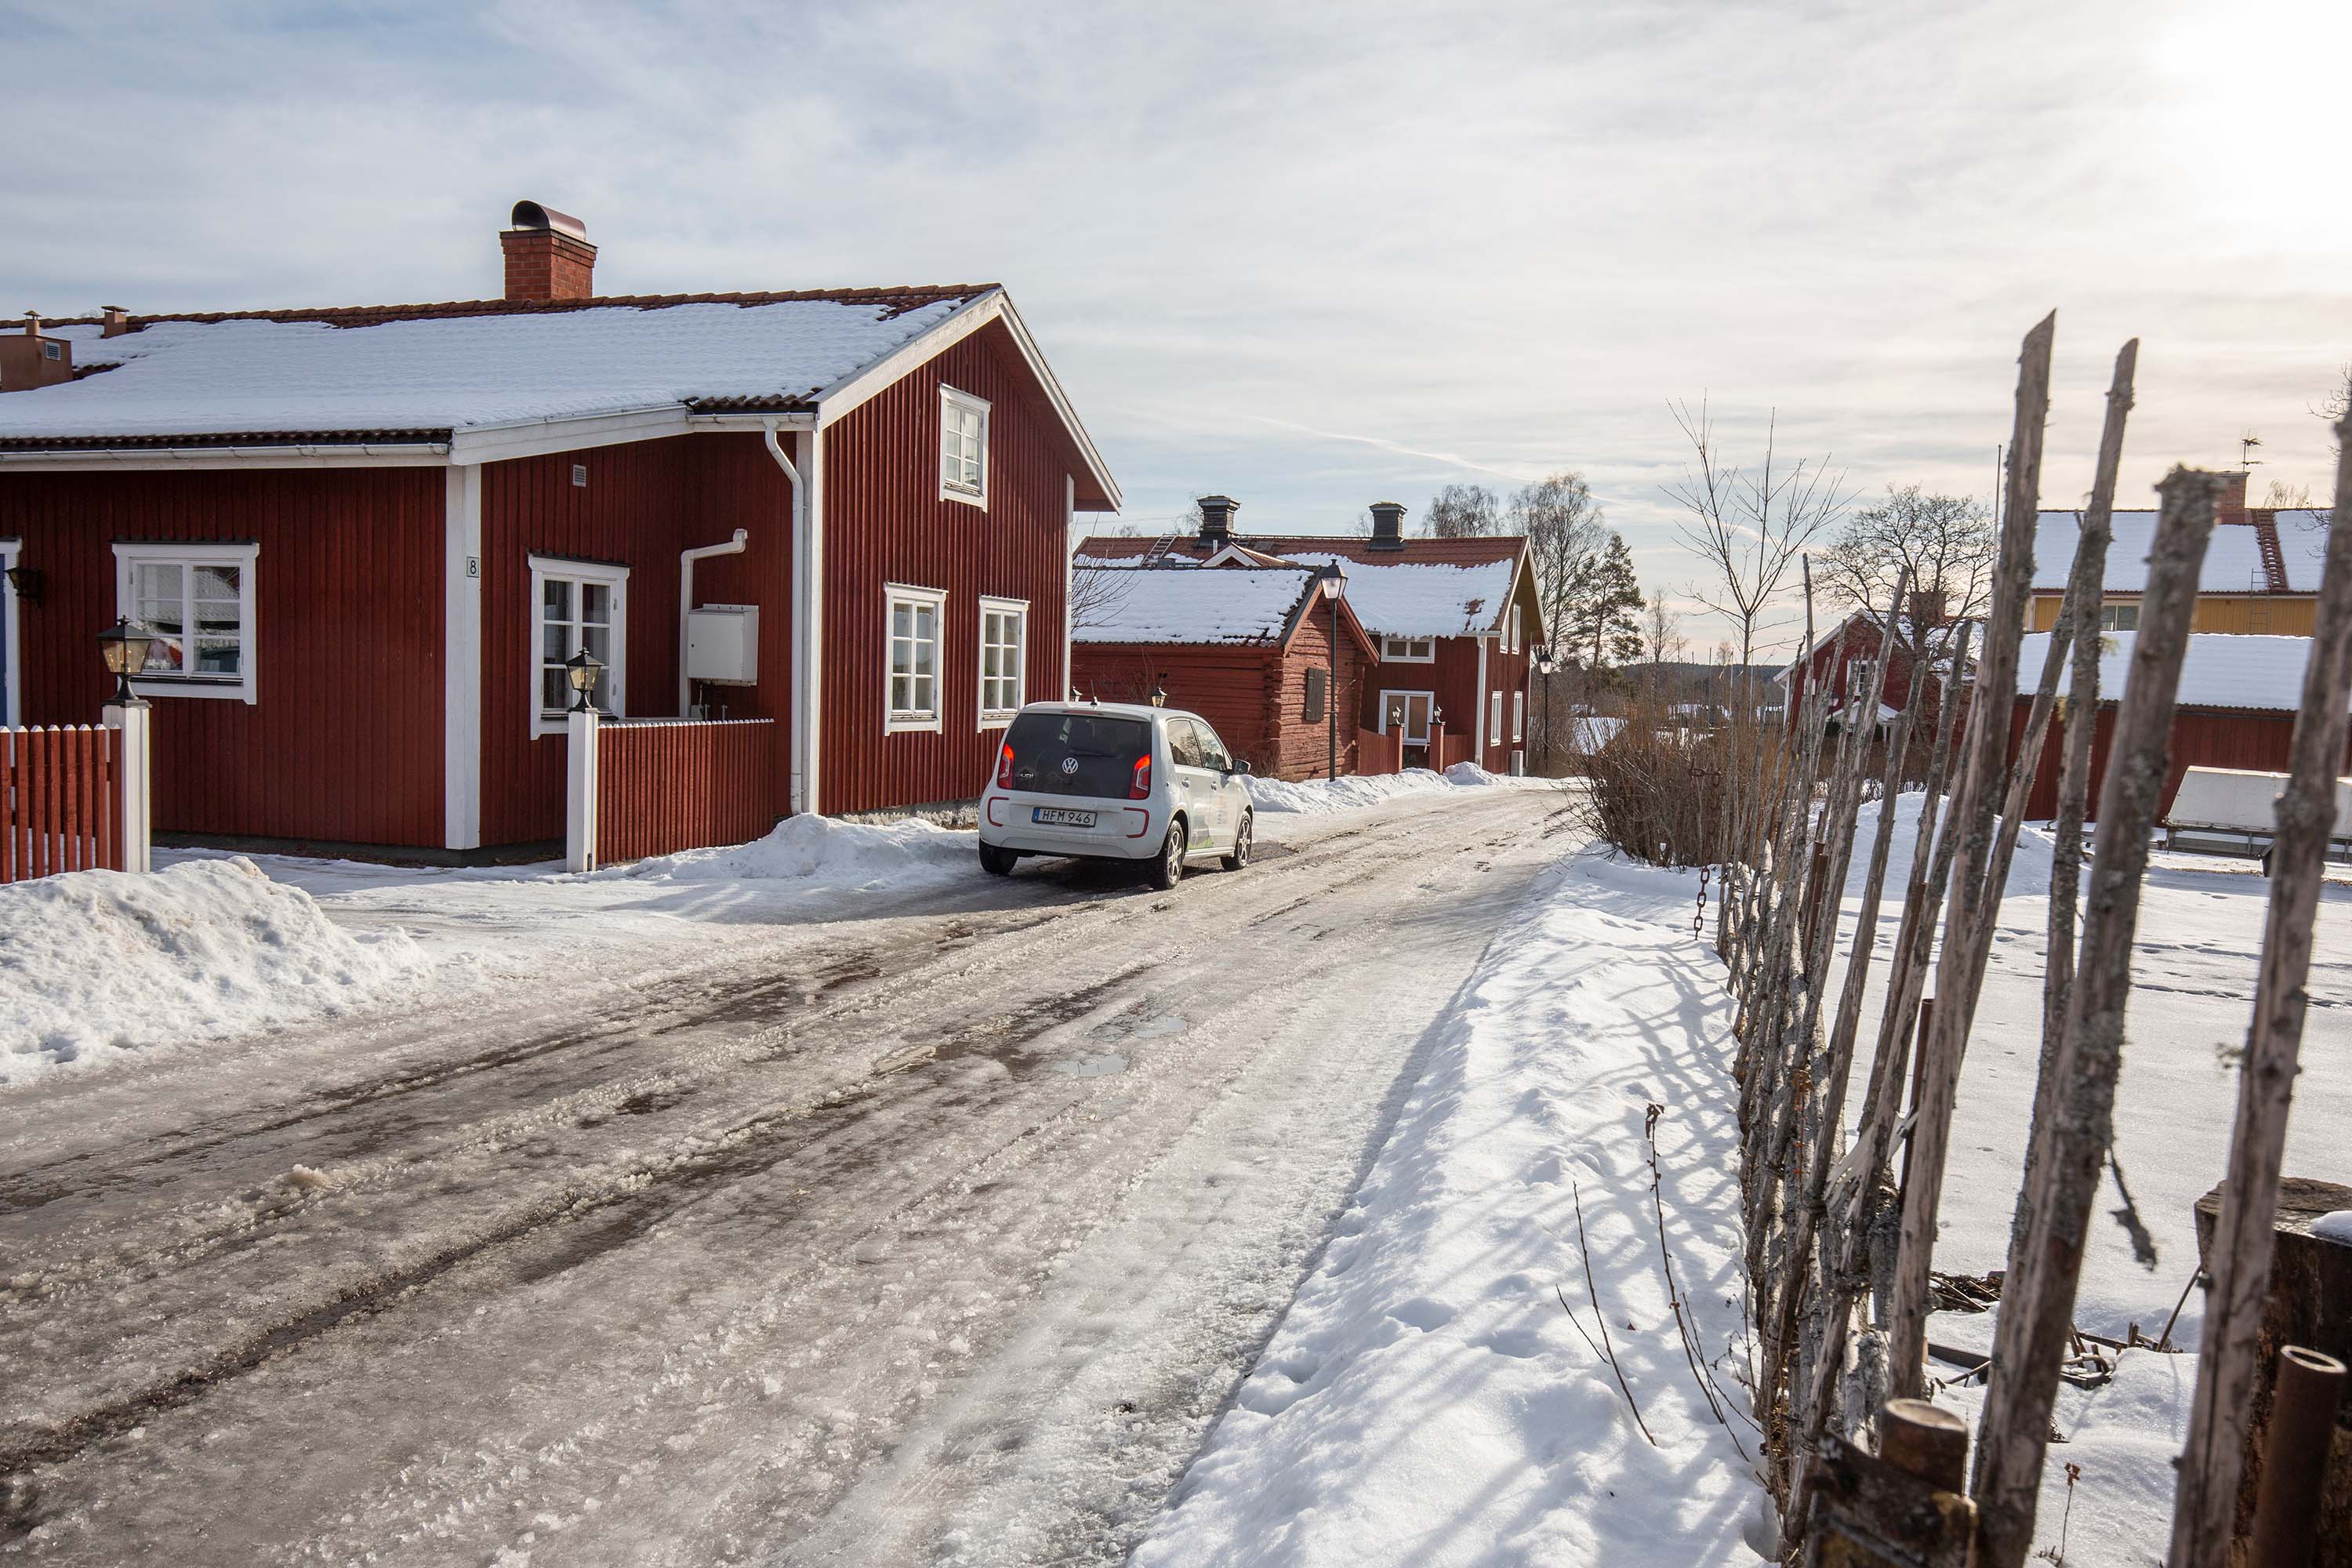 Sundborn är en kulturby som ligger vackert vid en å och sjö, kanske mest känd för att konstnären Carl Larsson bodde där. Foto: Anders Kristensson.